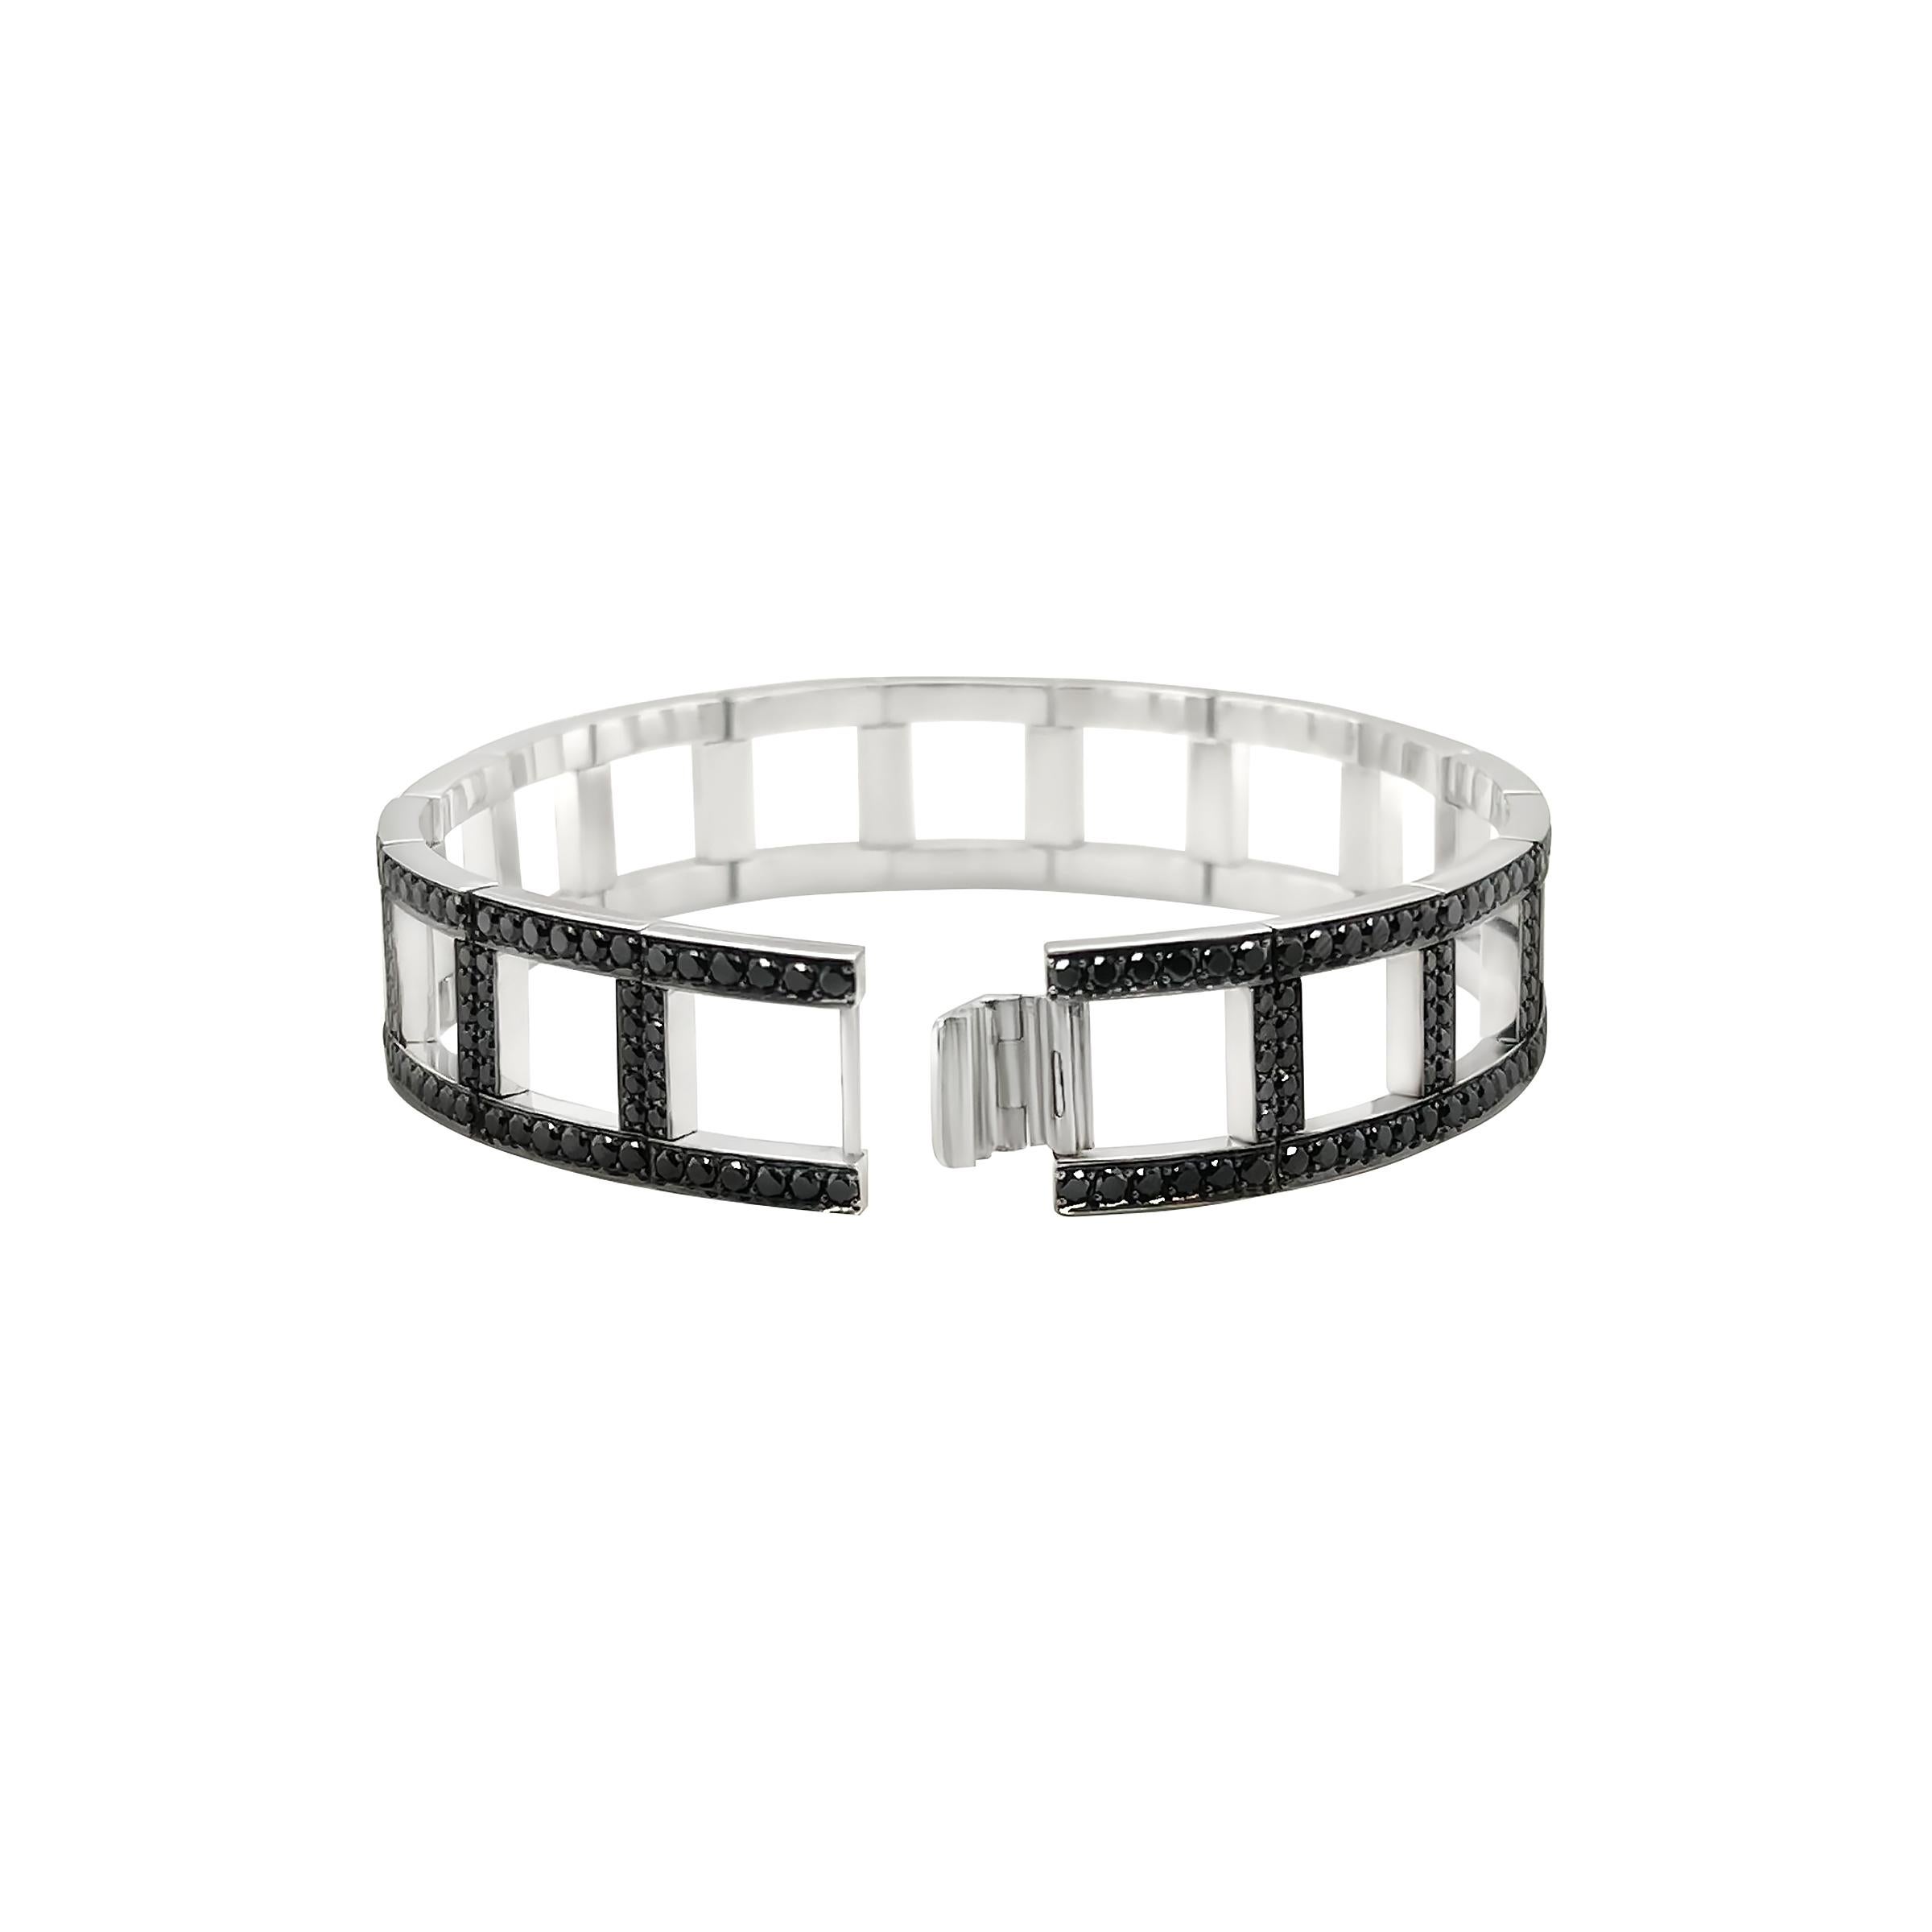 Dieses Black Diamond Link Armband ist der Inbegriff von Luxus und Raffinesse und wurde für Sie und Ihn entworfen.

Dieses atemberaubende Armband wurde fachmännisch aus 18 Karat Weißgold gefertigt und enthält 8,45 Karat natürliche schwarze Diamanten,